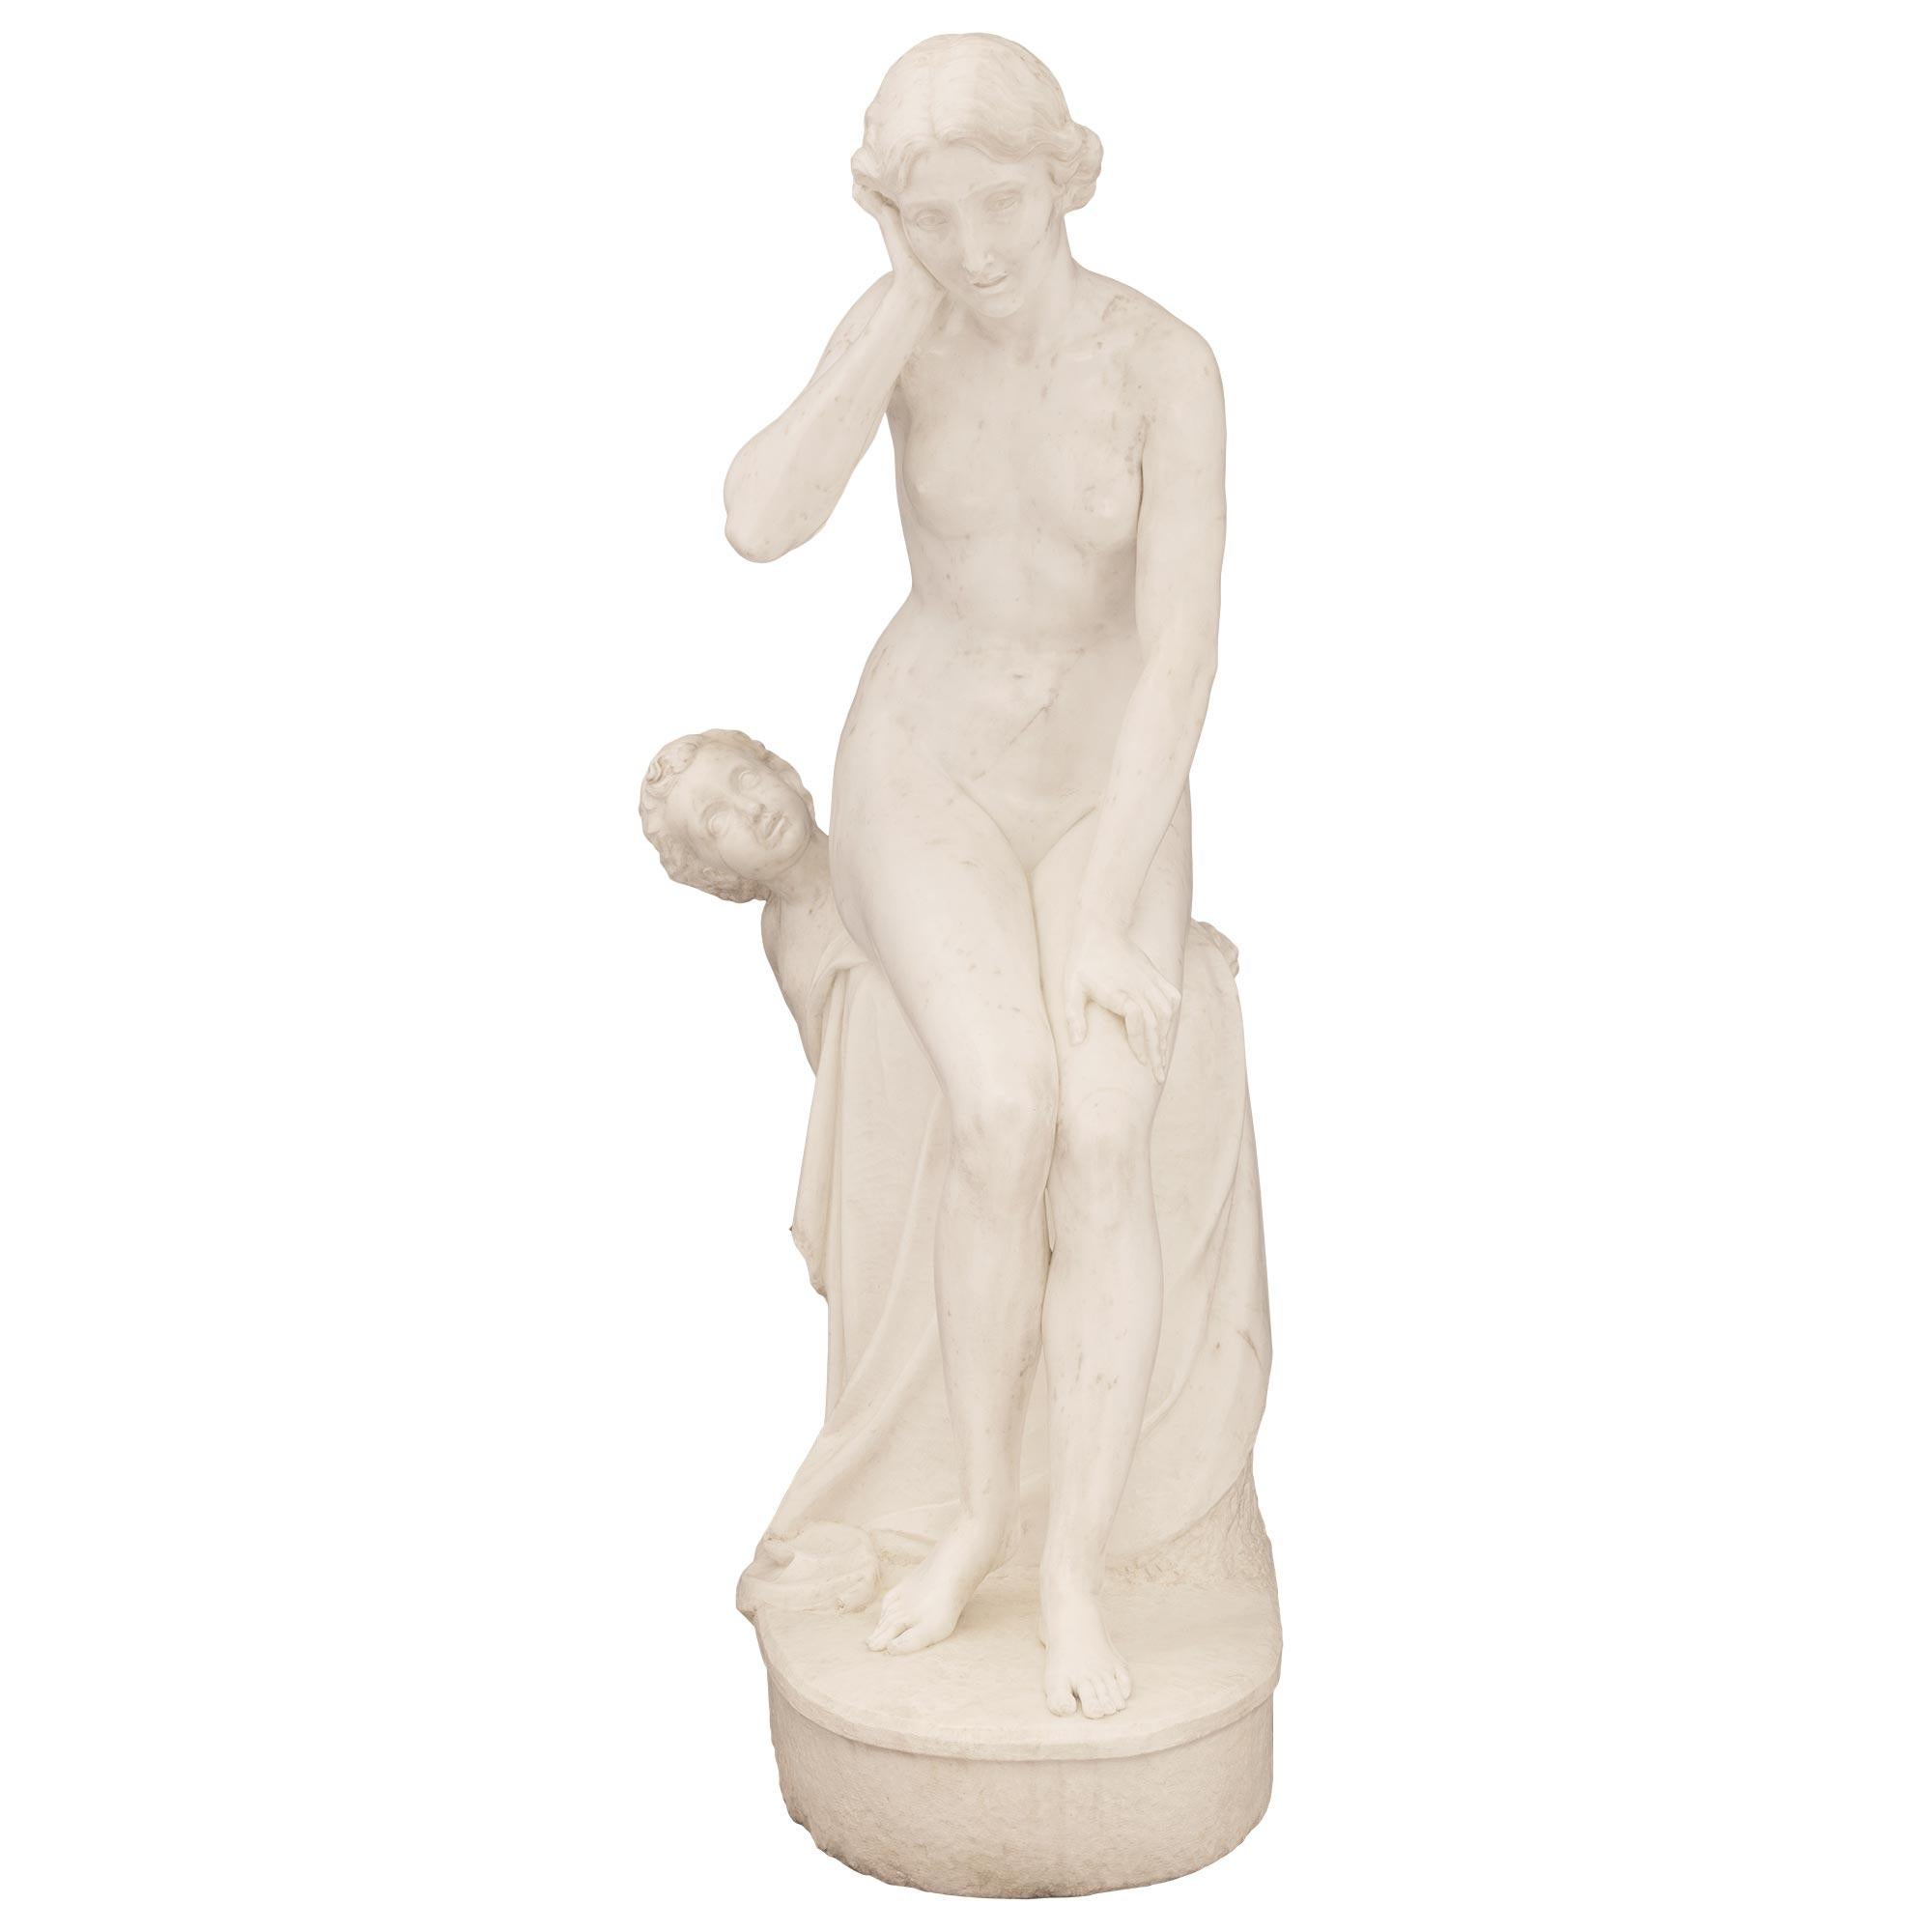 Superbe statue en marbre blanc de Carrare de très haute qualité, de style néoclassique français du XIXe siècle, intitulée Not Wanting To Hear Love (Ne pas vouloir entendre l'amour). La statue est surmontée d'une base oblongue avec un motif au sol